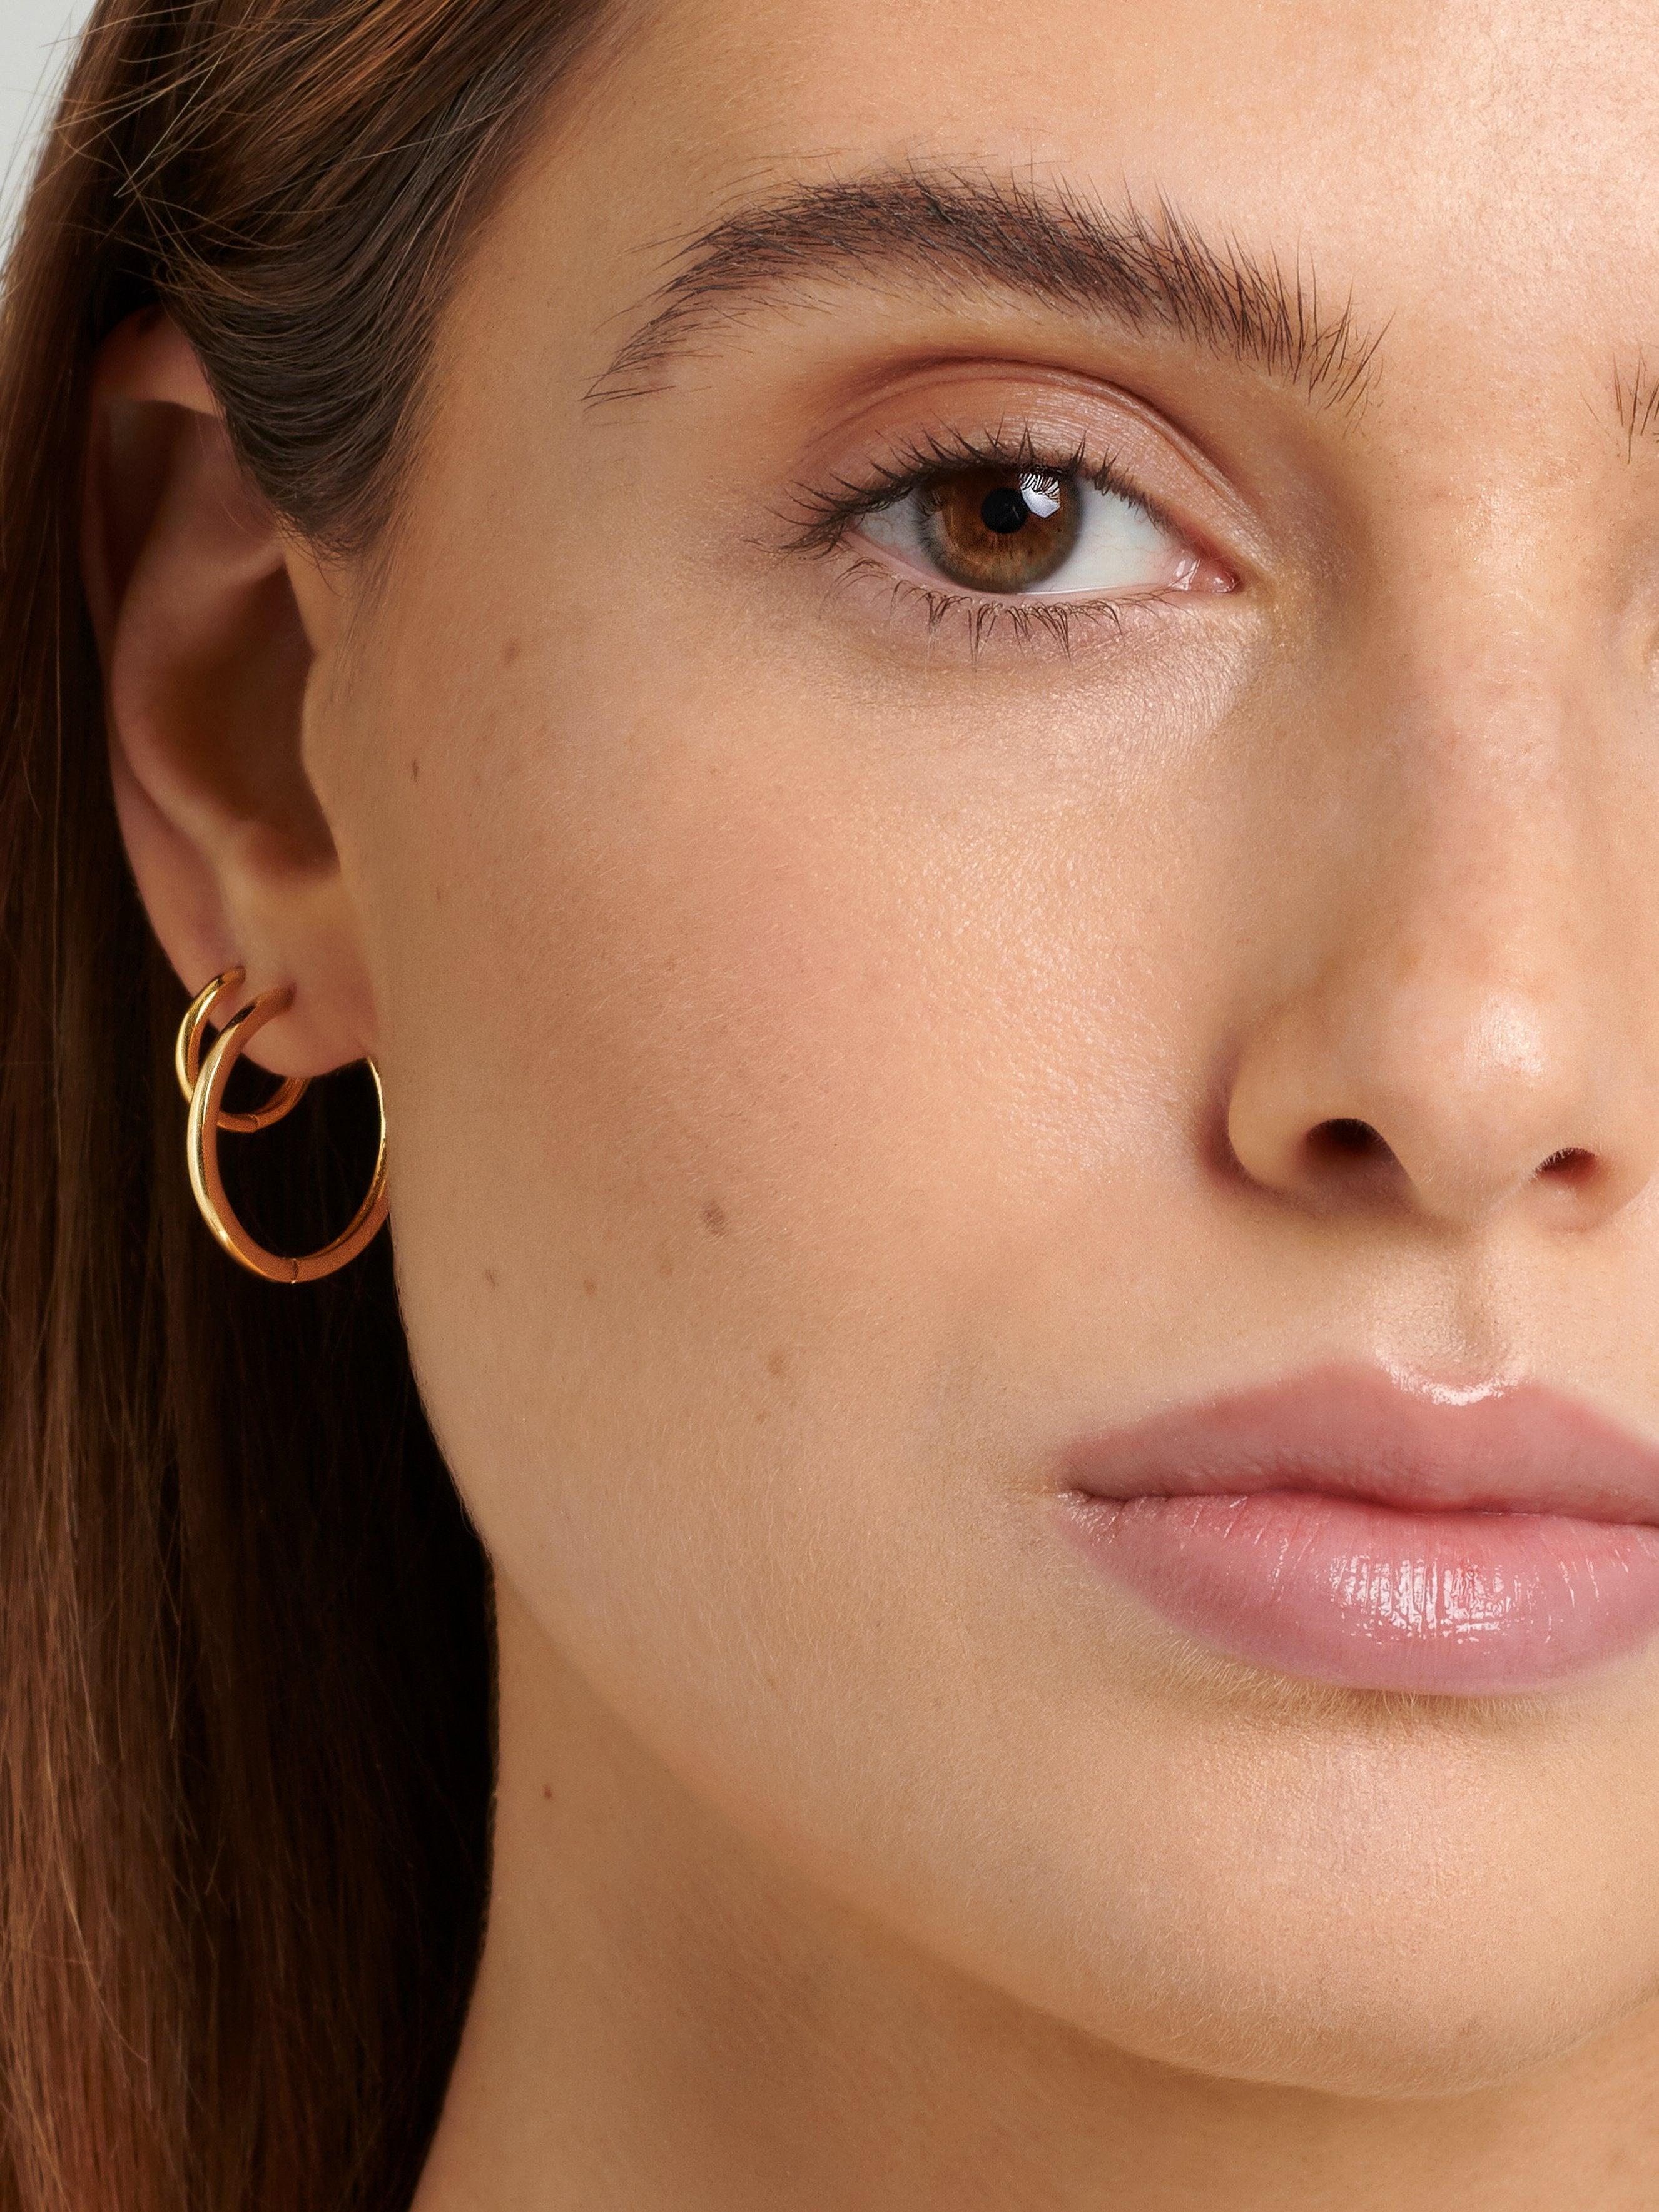 Female model wearing thin Gold Hoop Earrings in her lobe piercing.